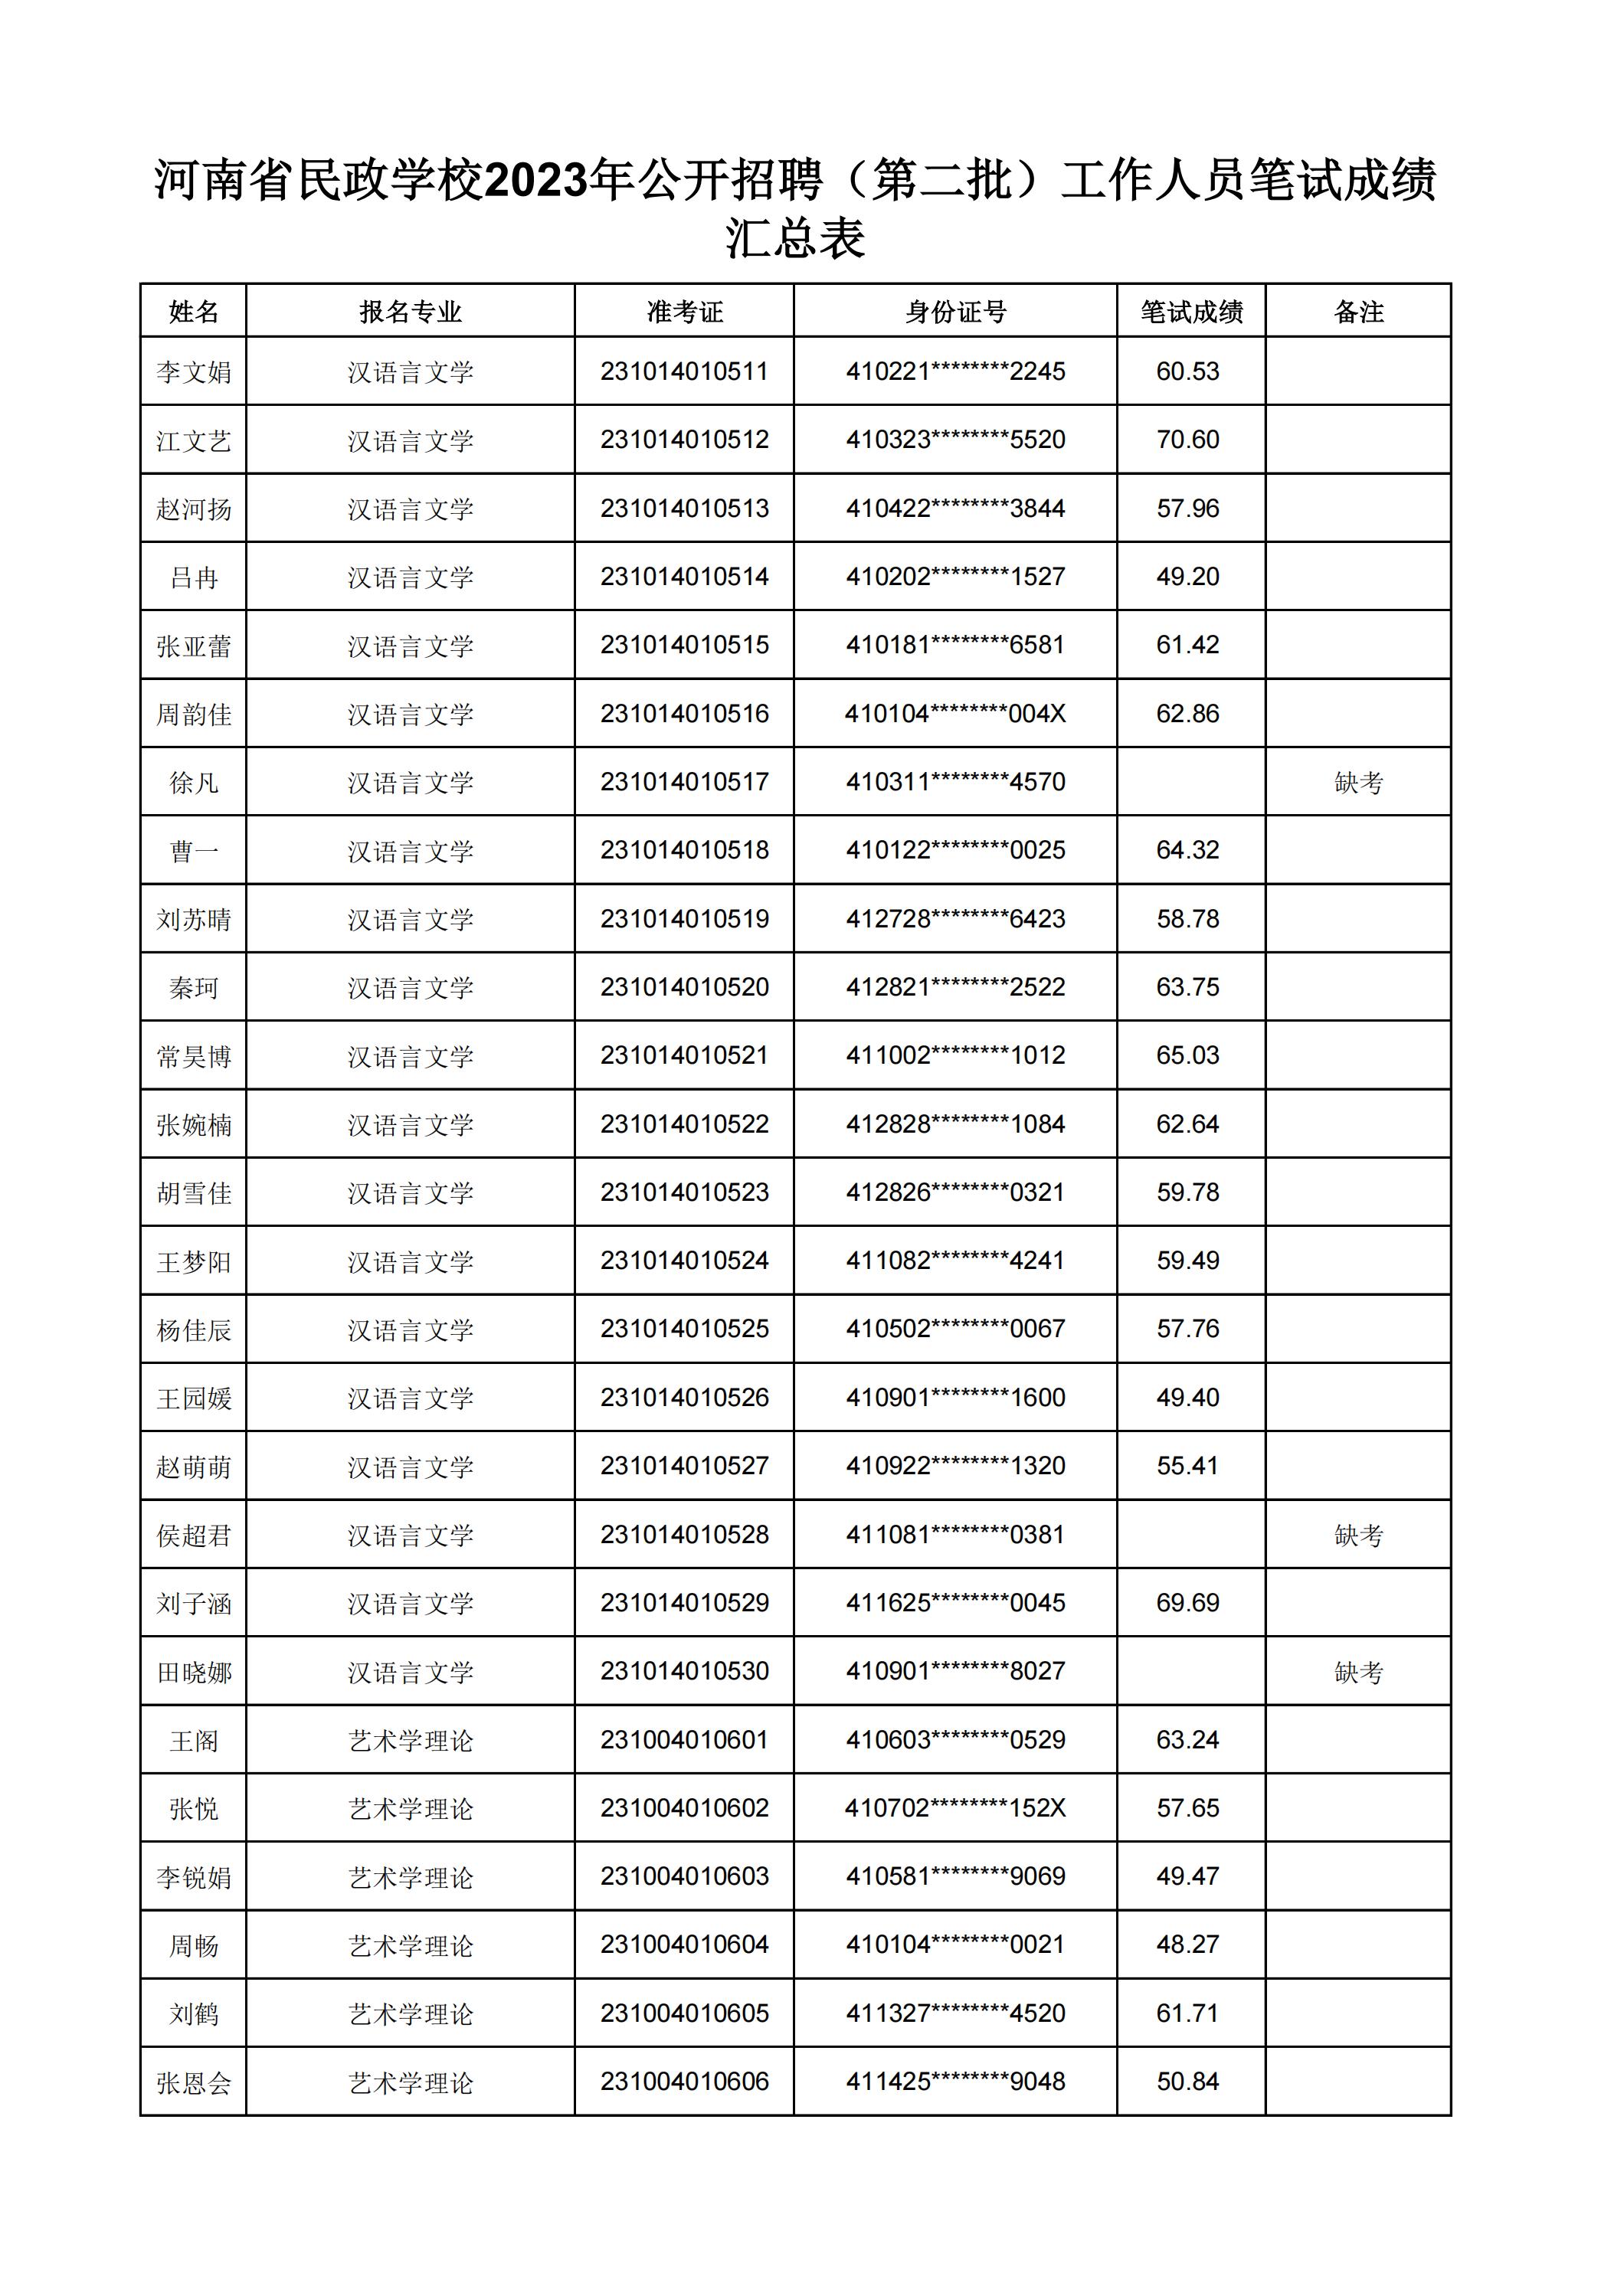 河南省民政学校2023年公开招聘（第二批）工作人员笔试成绩汇总表(2)_05.jpg